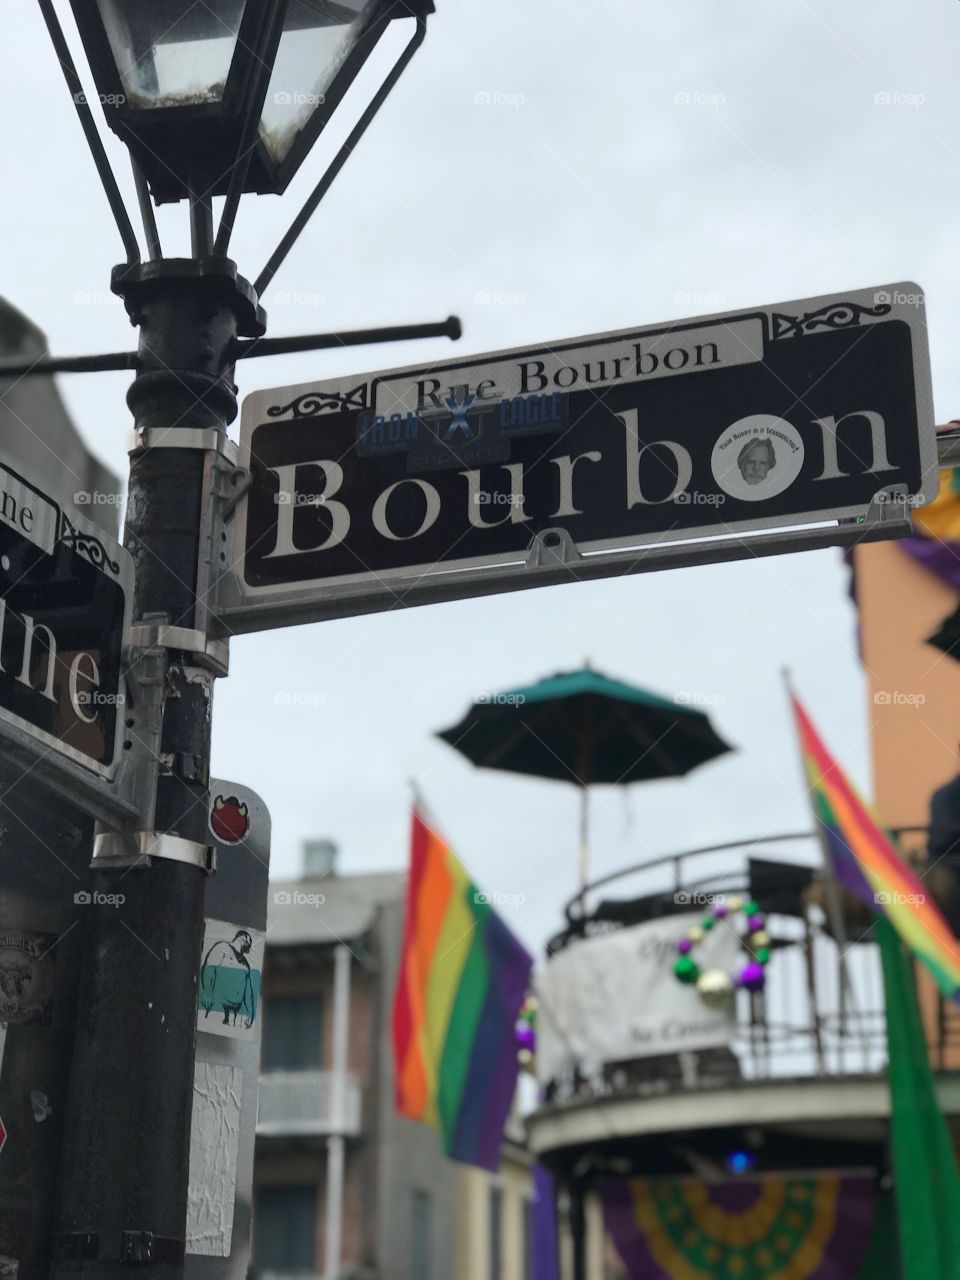 Love the rainbow flags on Bourbon Street